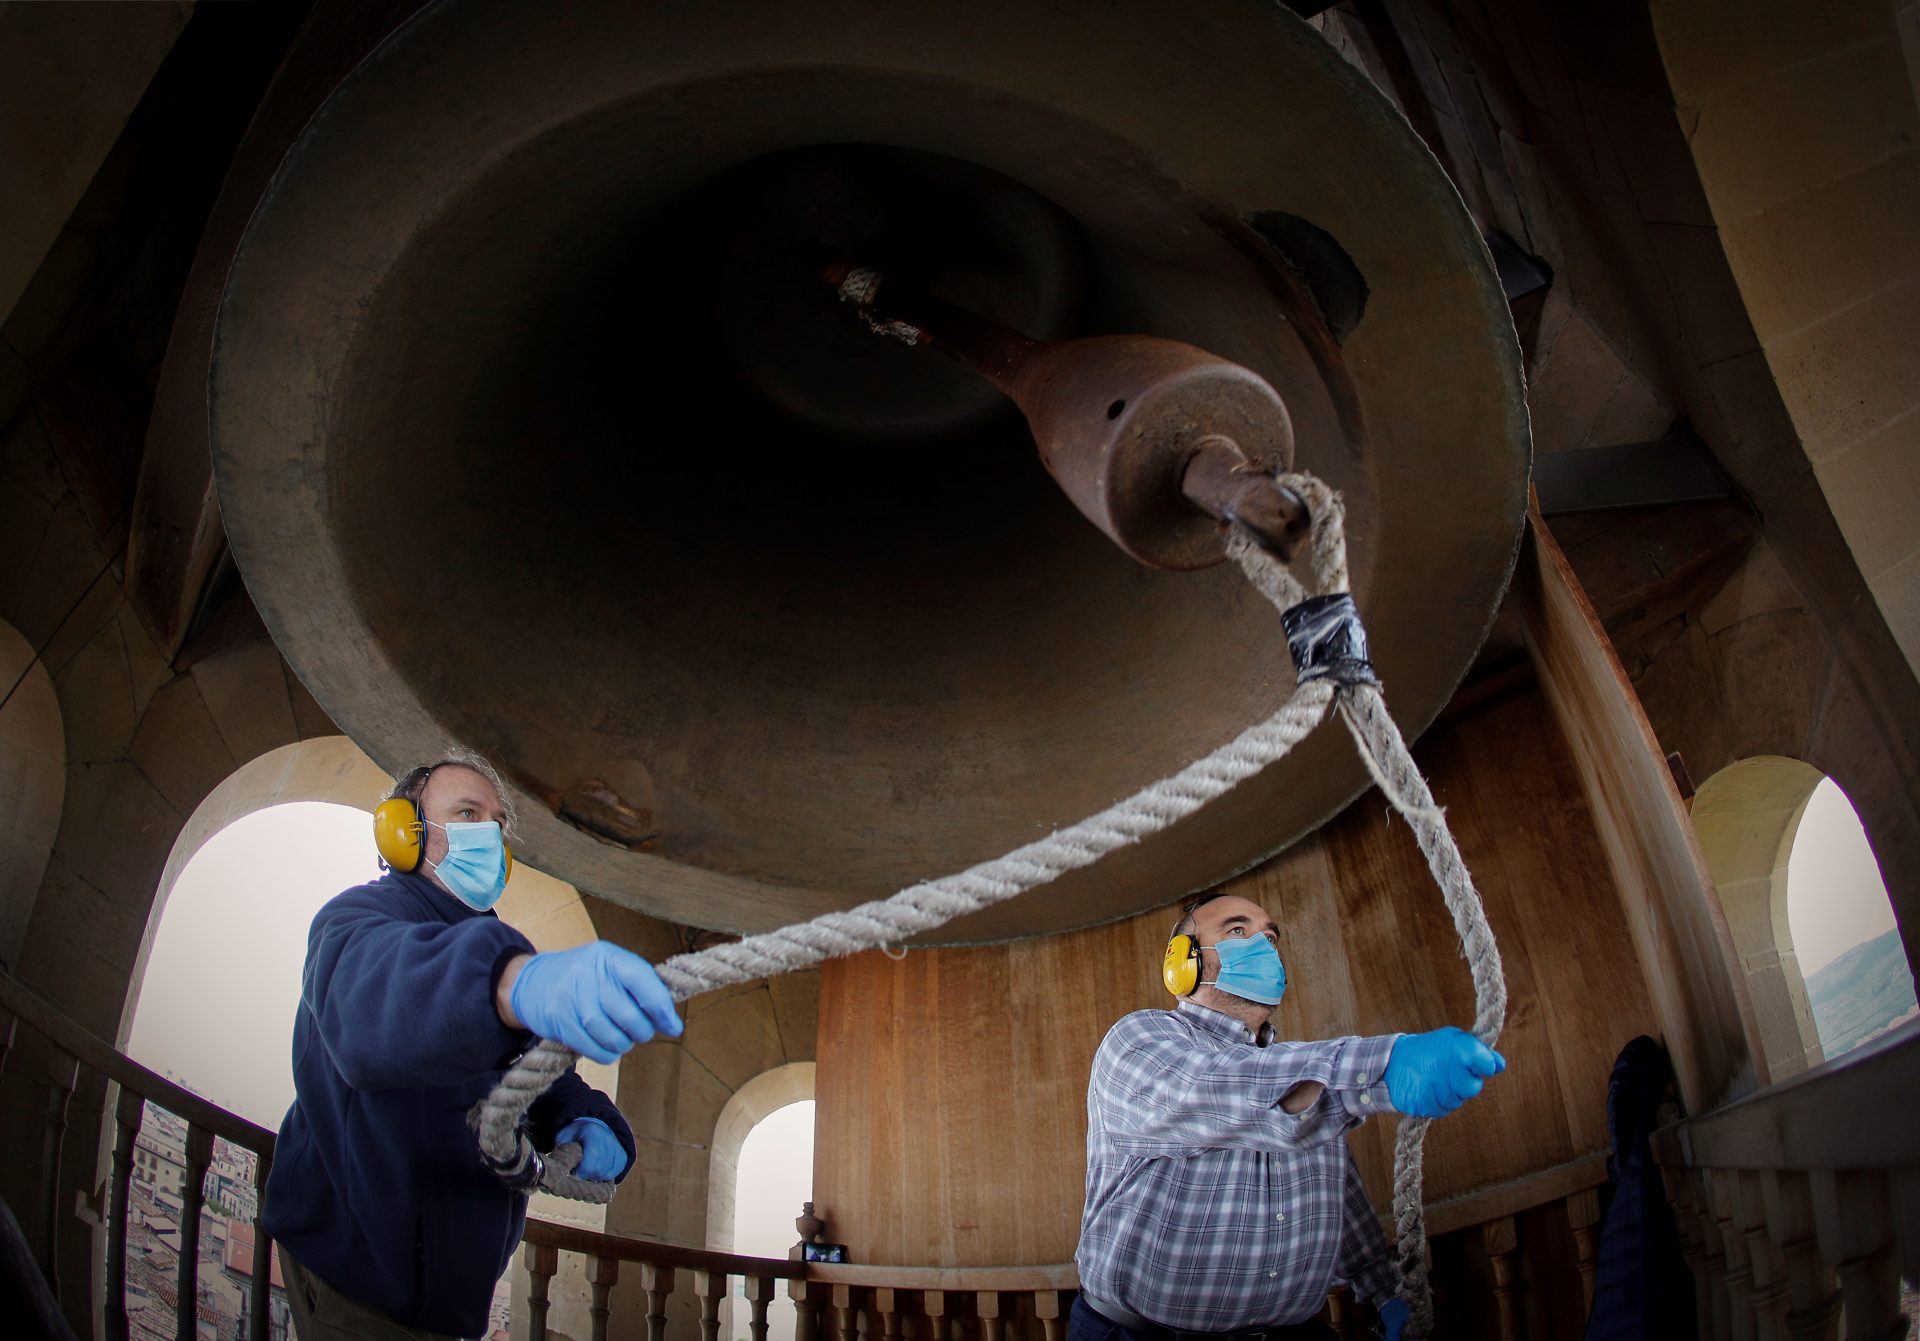 Dos campaneros hacen sonar la emblemática campana María de la Catedral de Pamplona. El toque de campanas español ha sido reconocido como patrimonio por la Unesco.